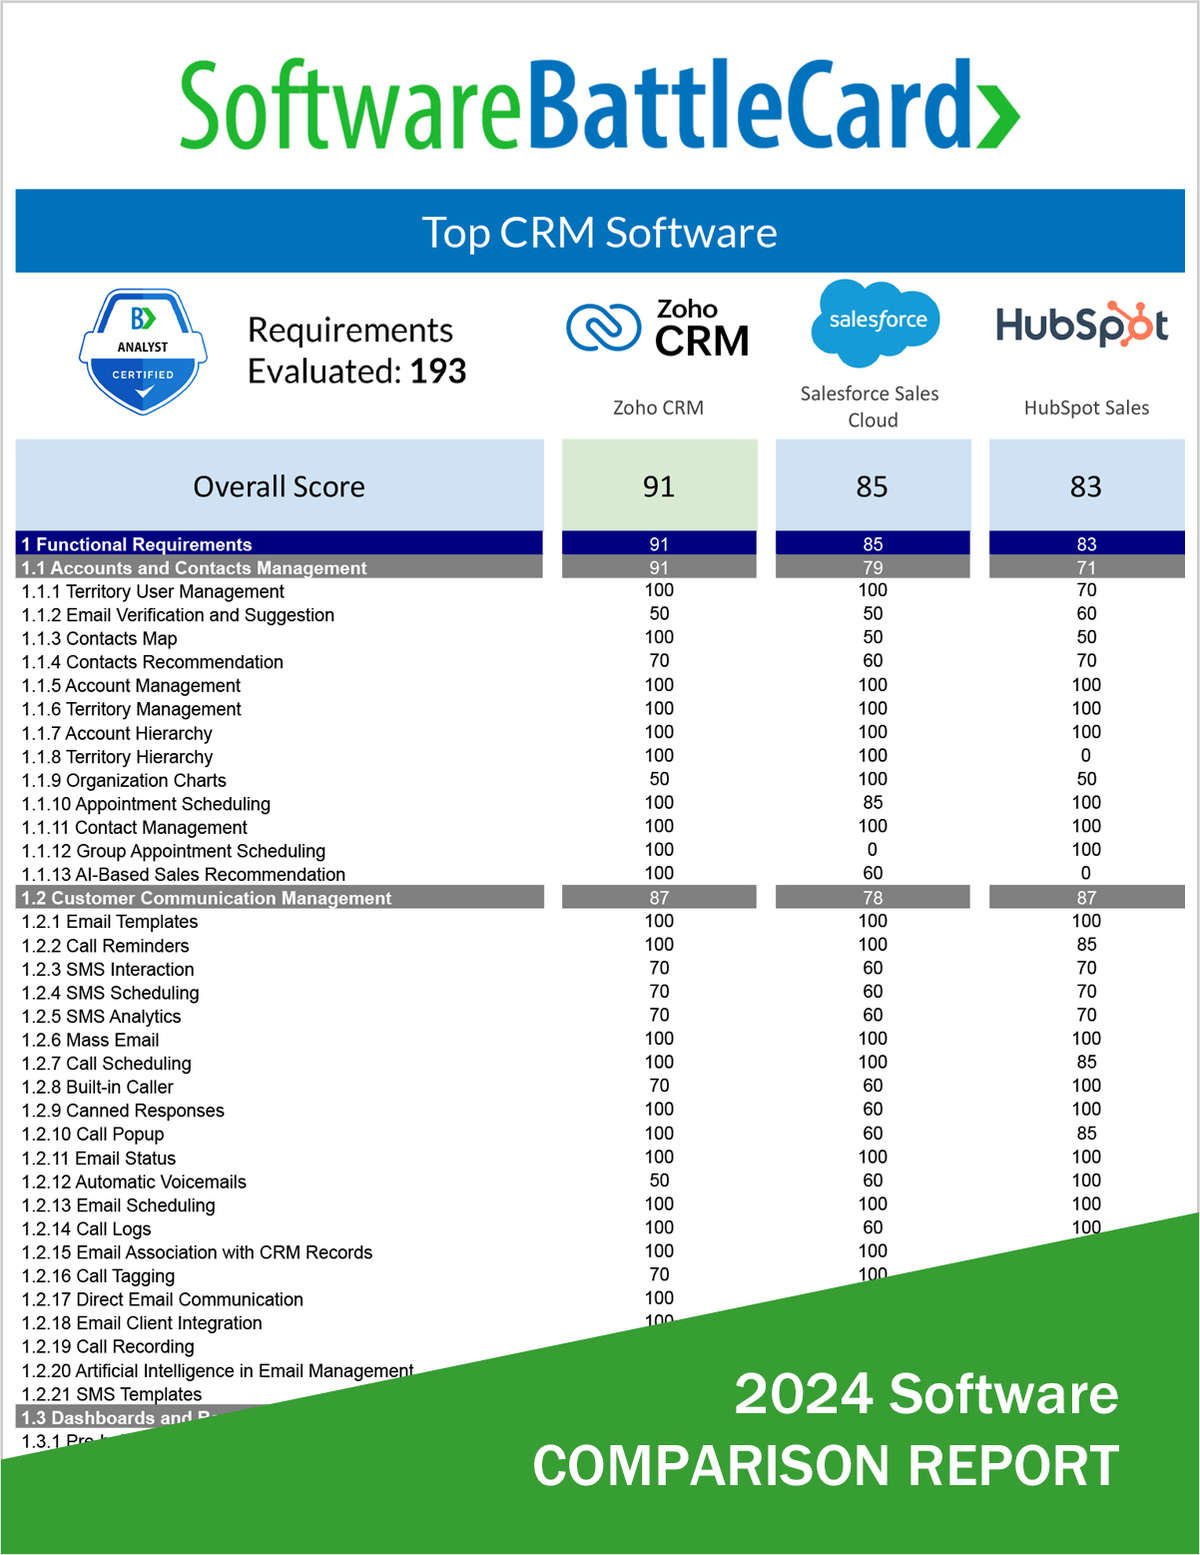 CRM Software BattleCard--Zoho CRM vs. Salesforce Sales Cloud vs. HubSpot Sales